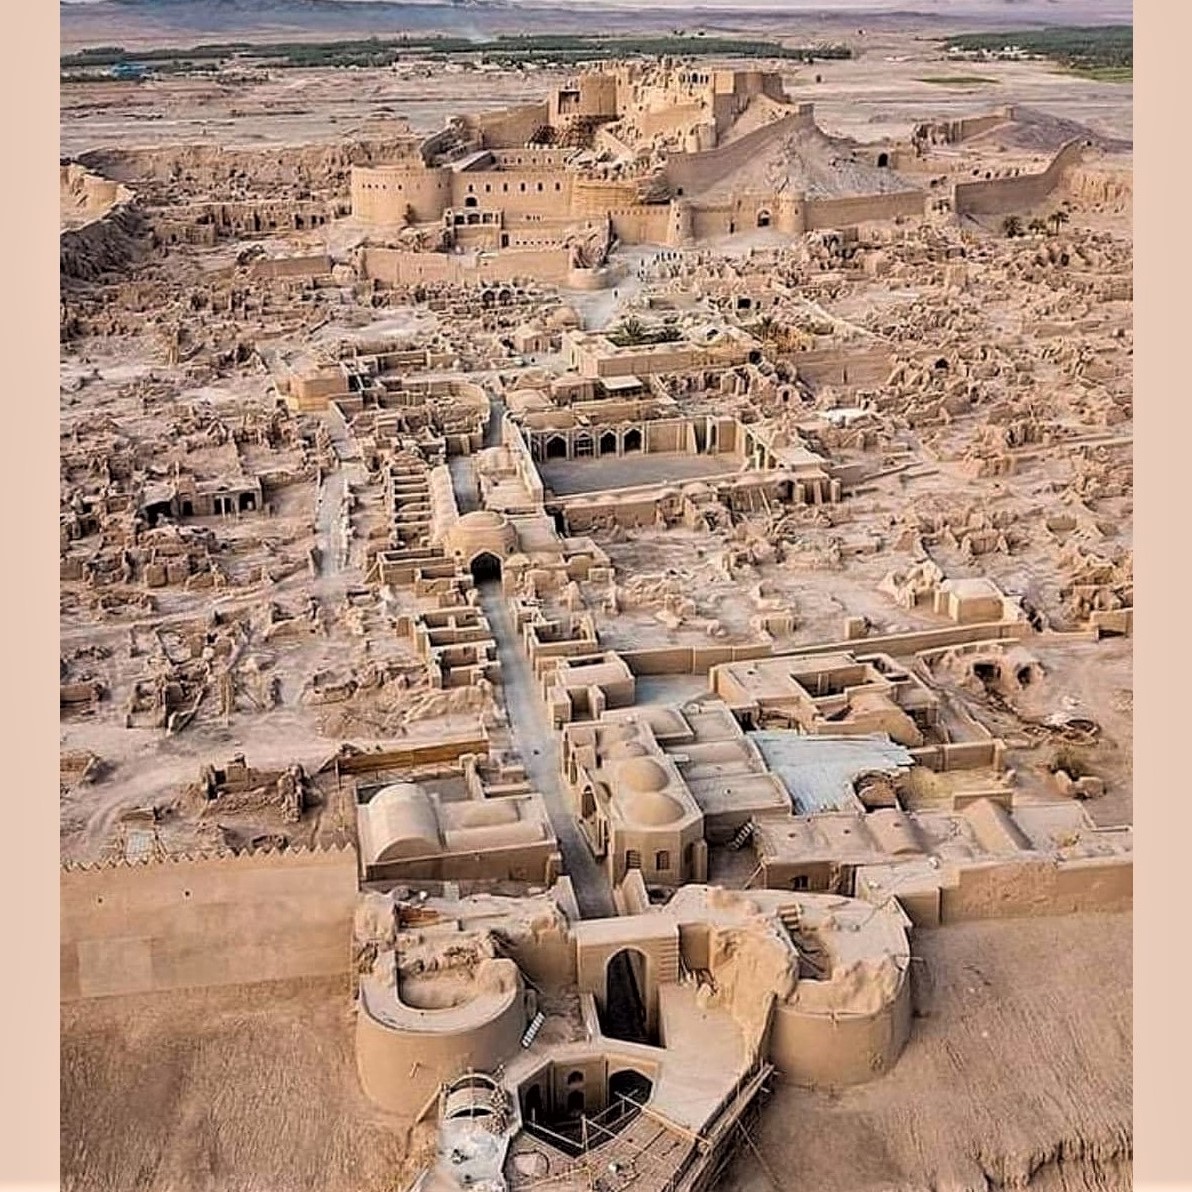 A UNESCO World Heritage Site in Iran: Arg-e Bam (the citadel of Bam)